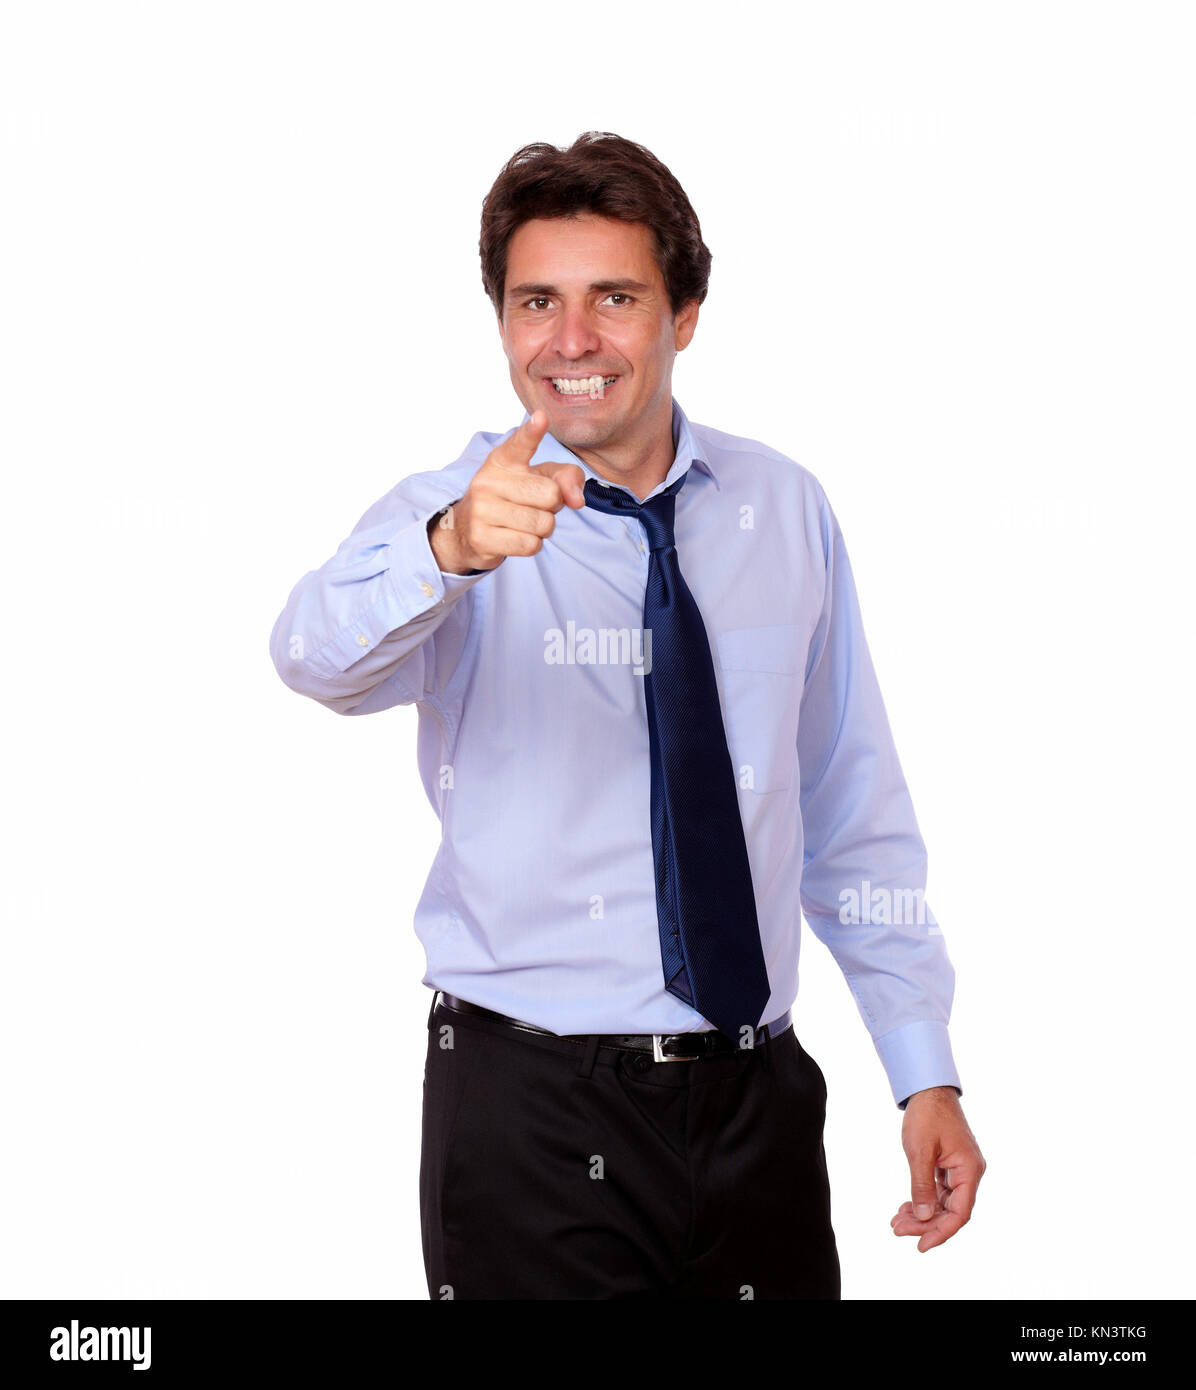 Retrato de un hombre adulto latino con corbata apuntando a usted mientras está de pie sobre un fondo blanco. Foto de stock